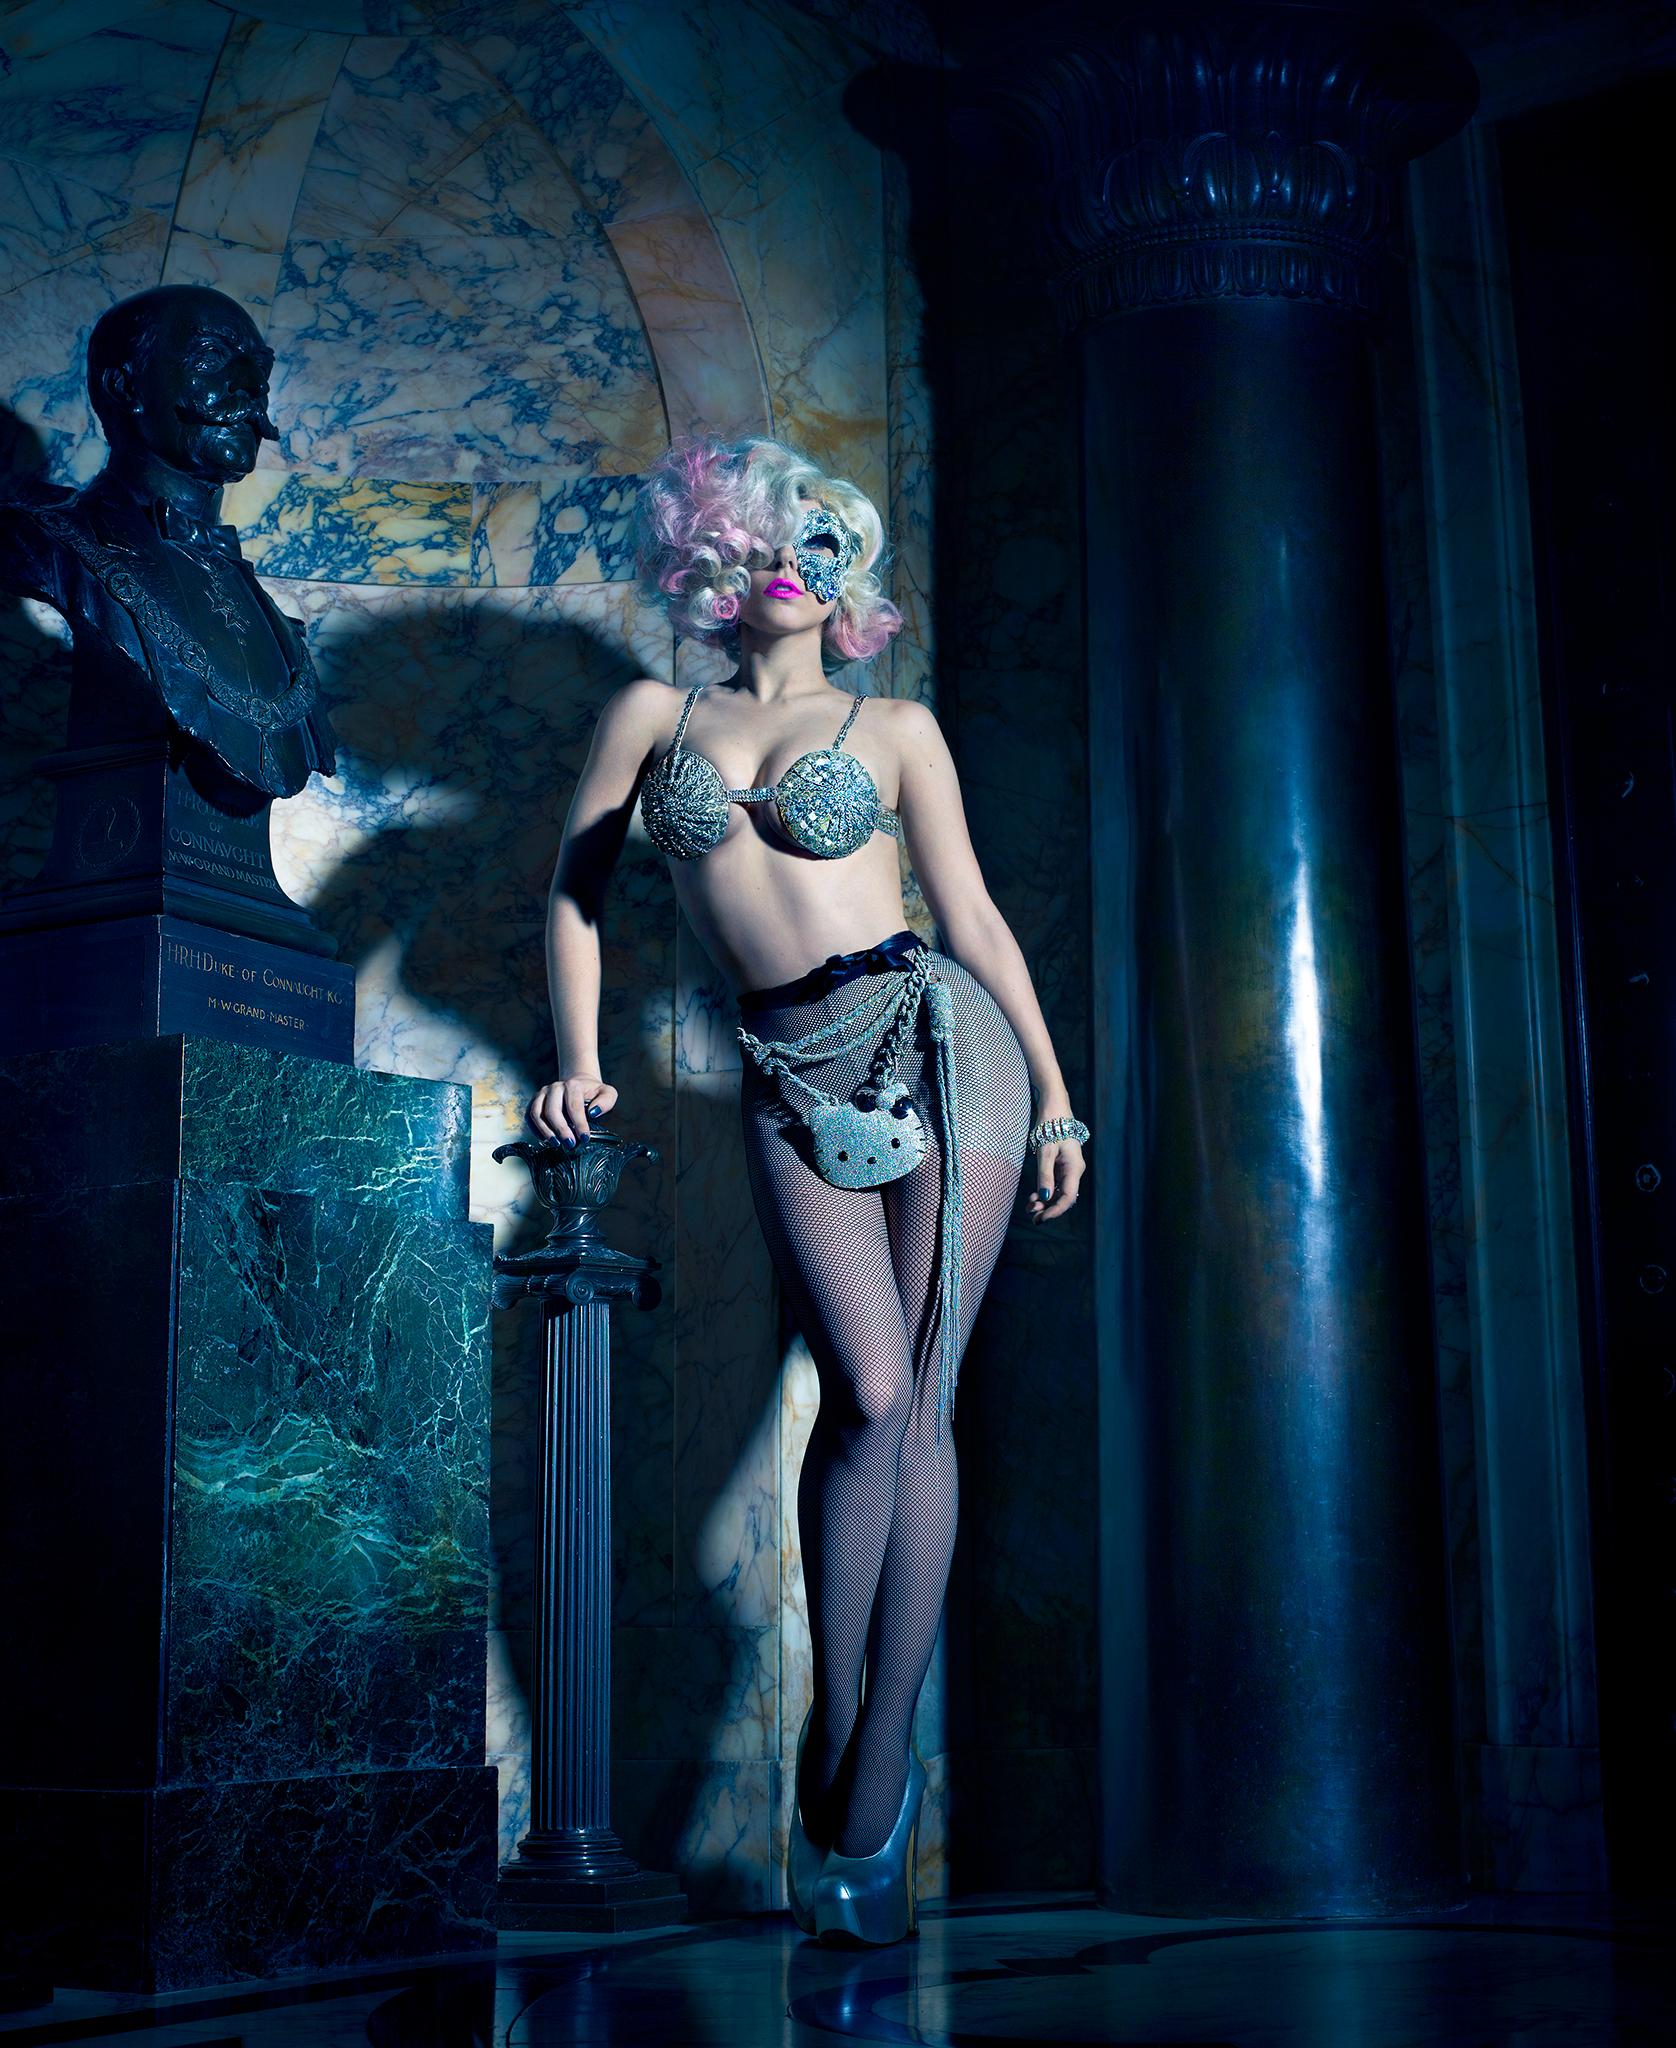 Kunstdruck in Museumsqualität von Lady Gaga von Fotograf Markus Klinko. Gedreht 2009 in London zum 35-jährigen Jubiläum von Hello Kitty.

Dieser Druck ist in den folgenden Größen erhältlich, signiert und nummeriert von Markus Klinko
24" hoch -